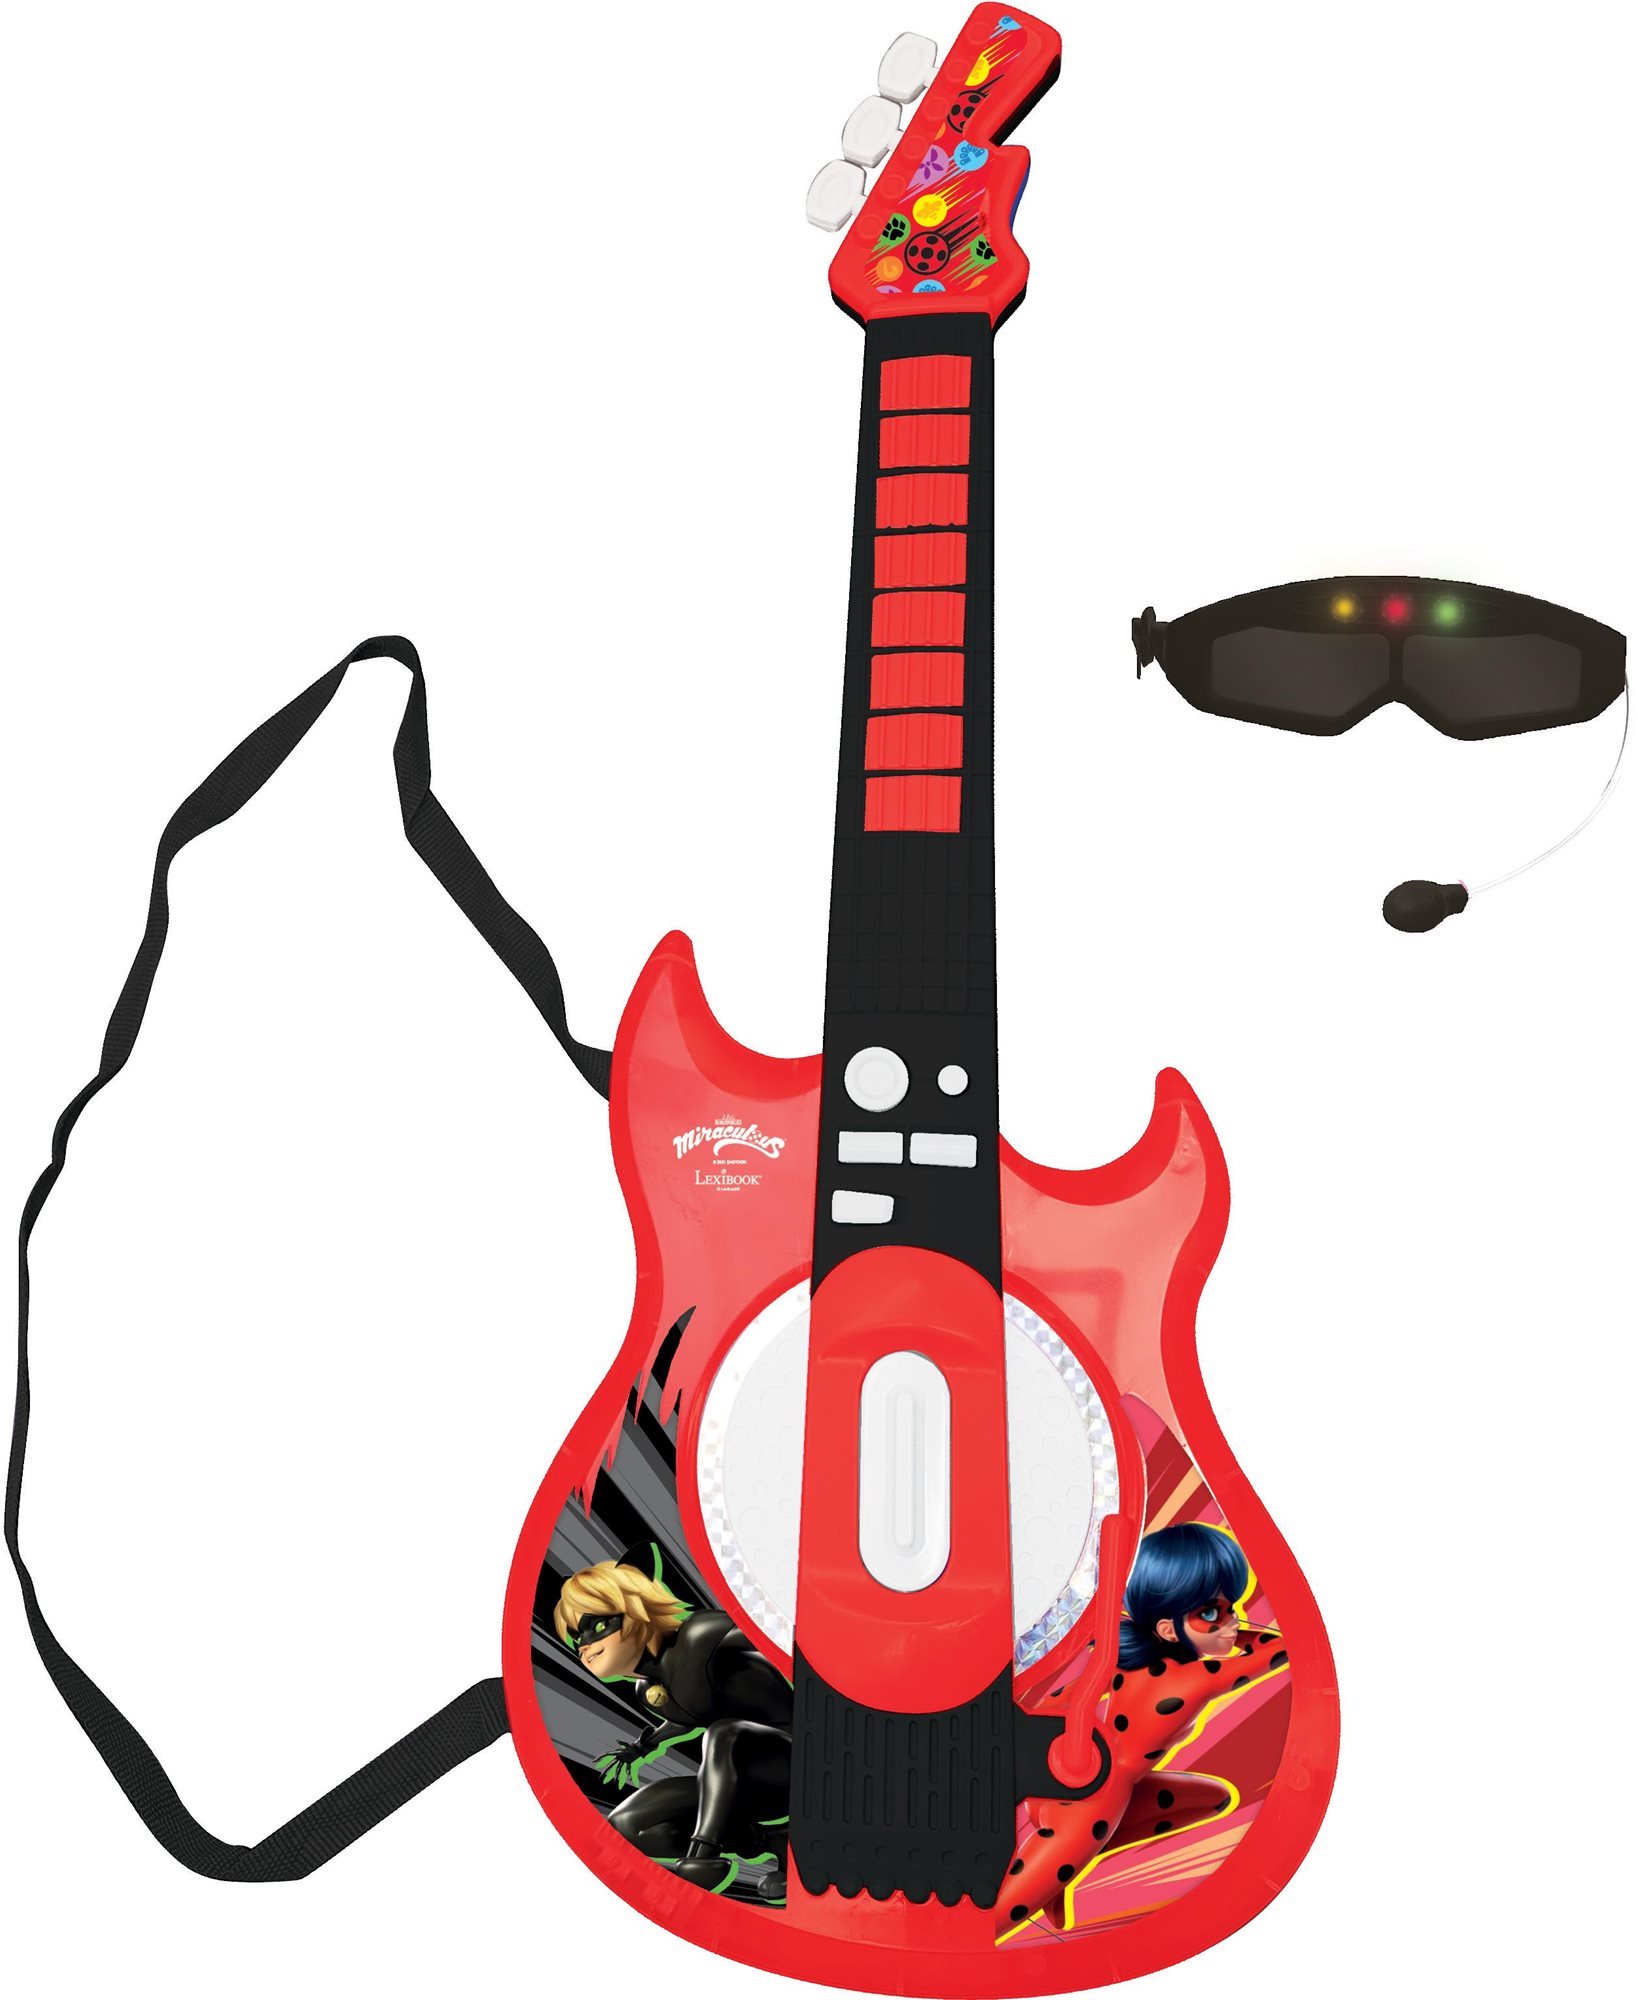 Lexibook Miraculous Elektronikus világító gitár szemüveg alakú mikrofonnal